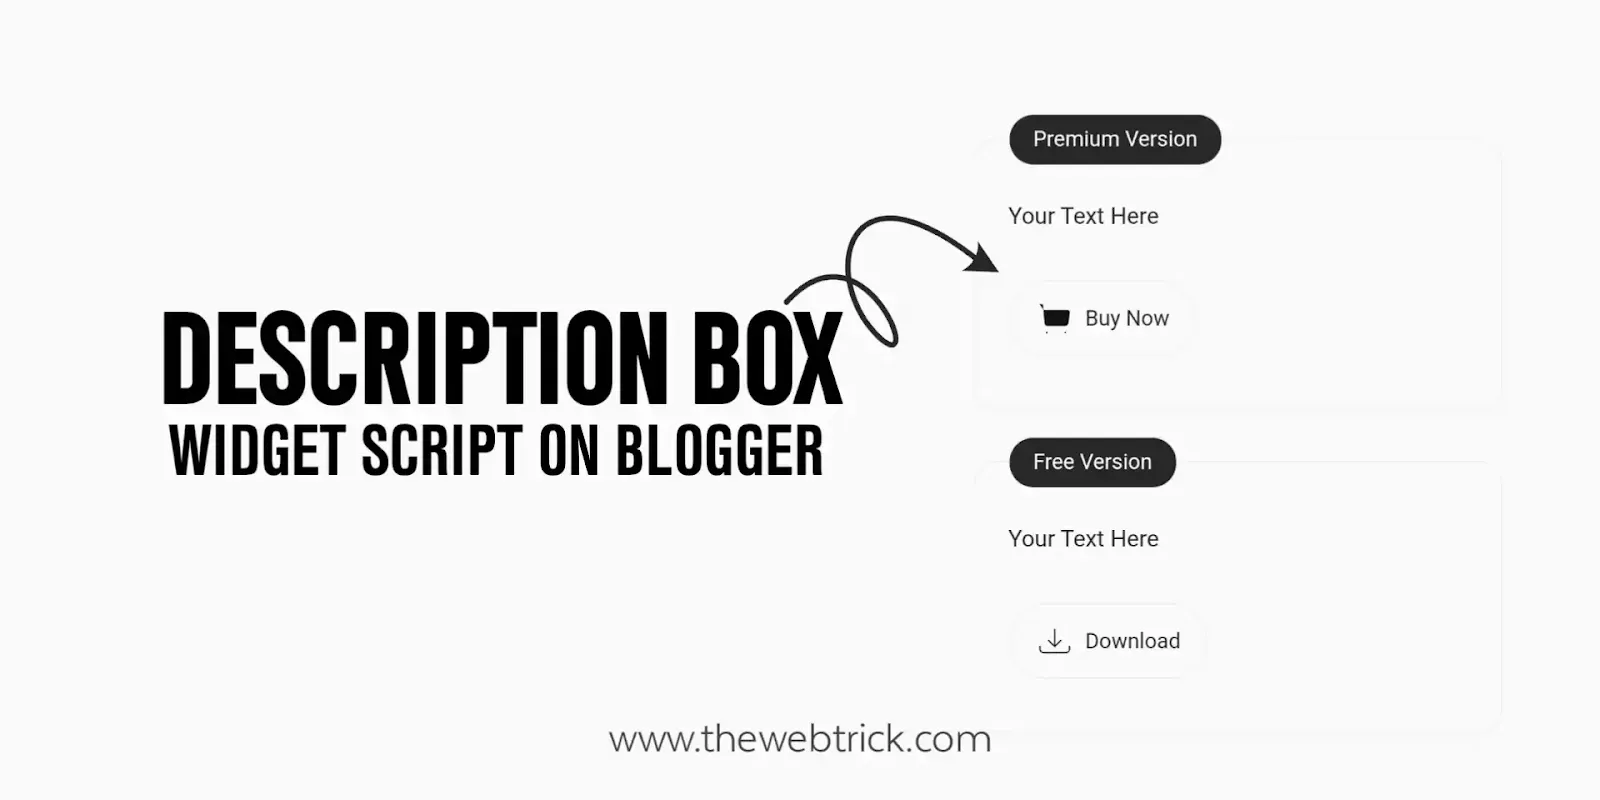 Create Description Box Widget in Blogger